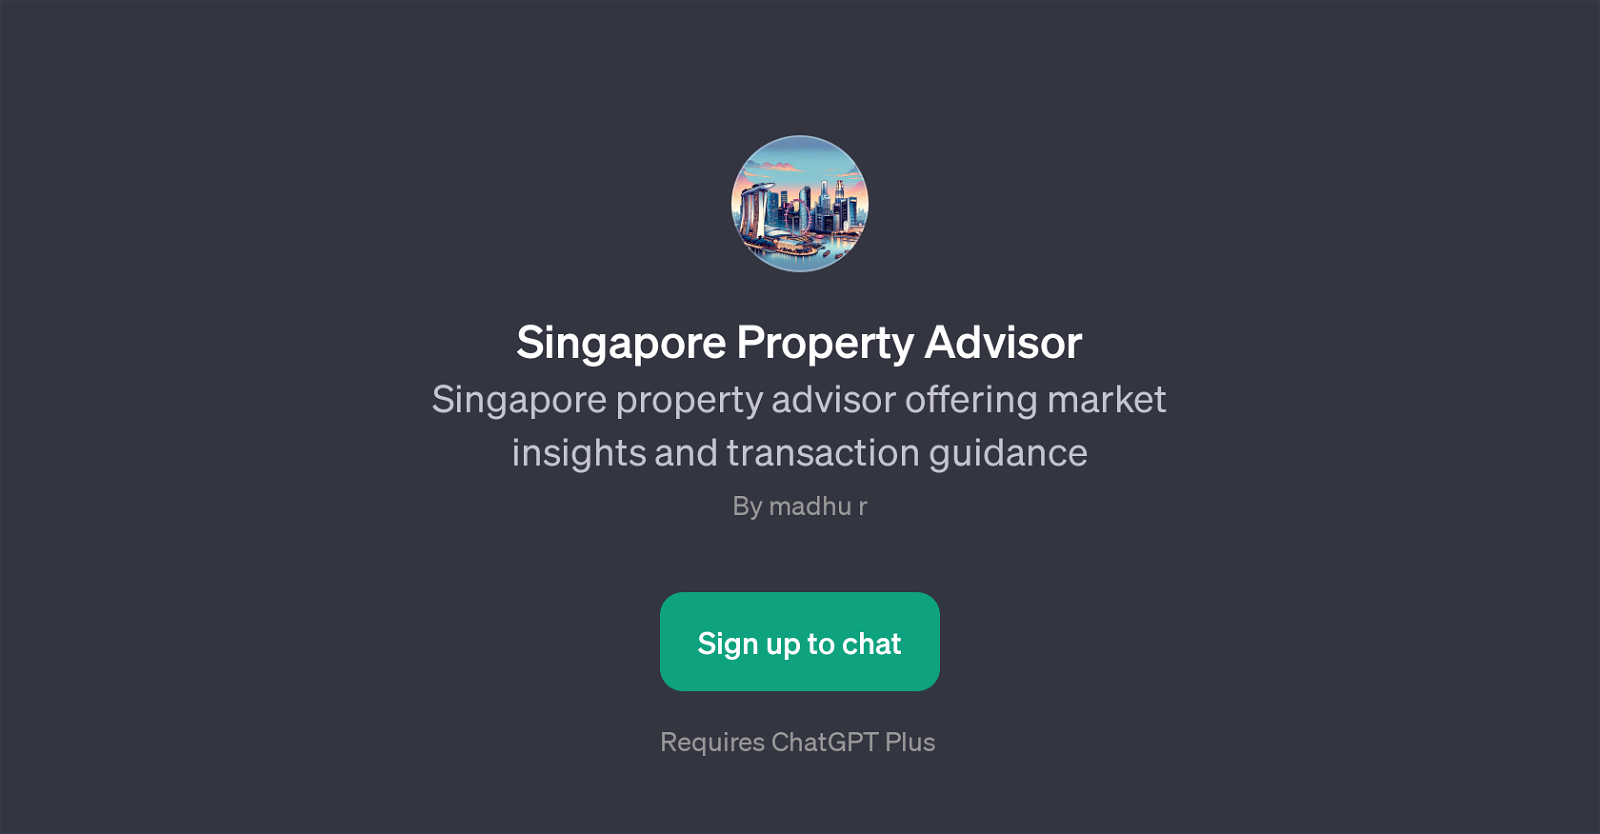 Singapore Property Advisor website